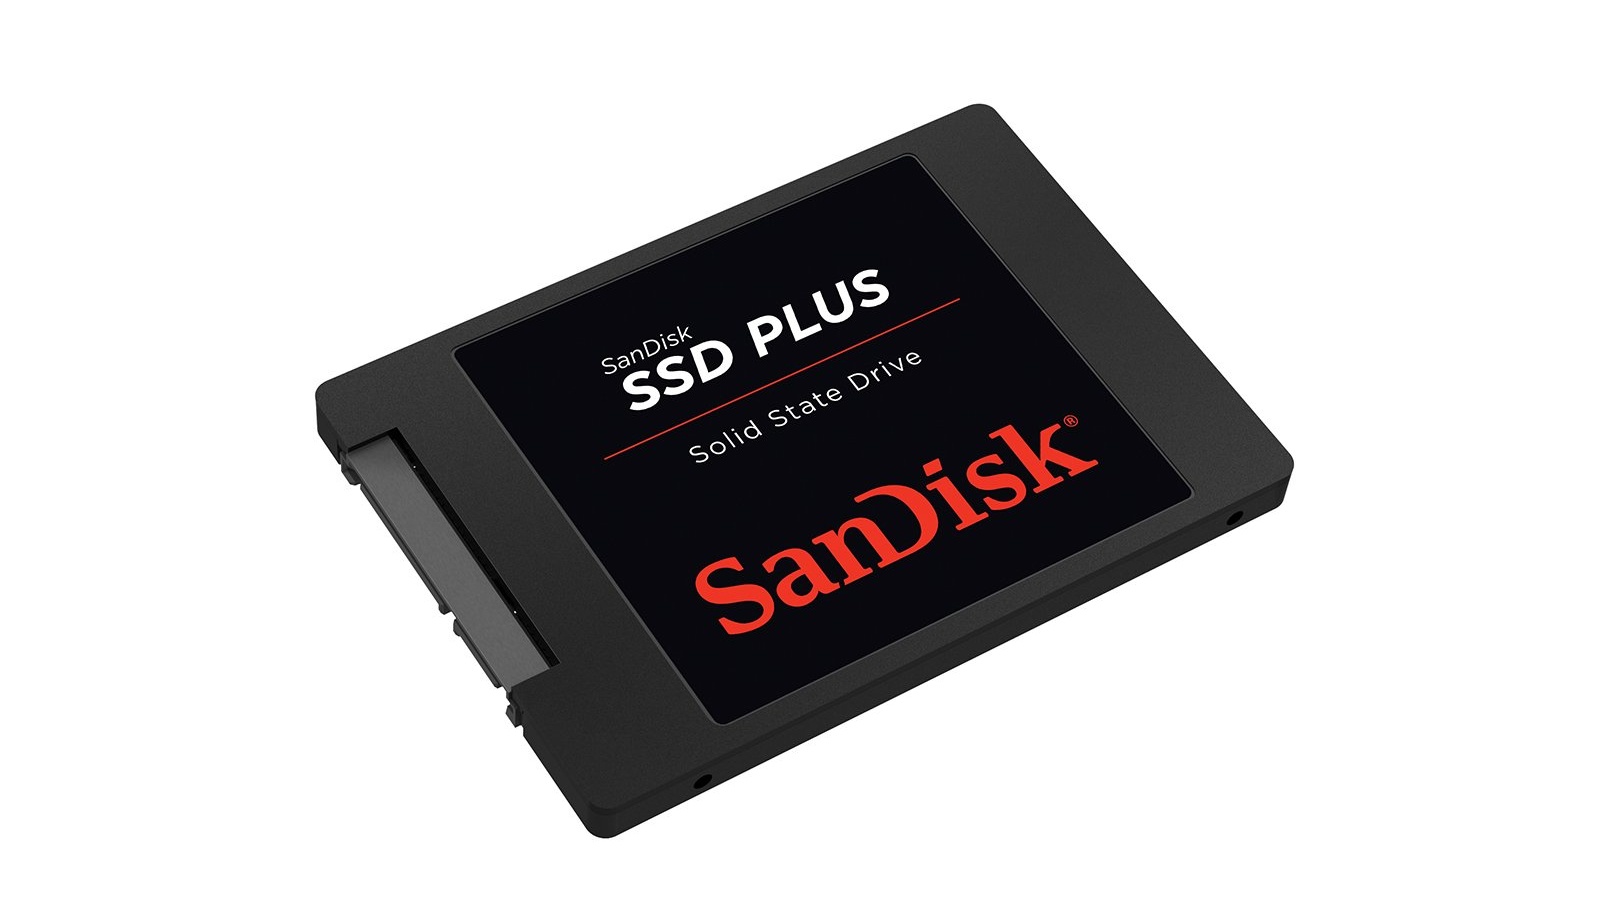 WD Blue SSD 500 GB, Sandisk Plus 2 TB und Gaming-Chairs bei Mediamarkt